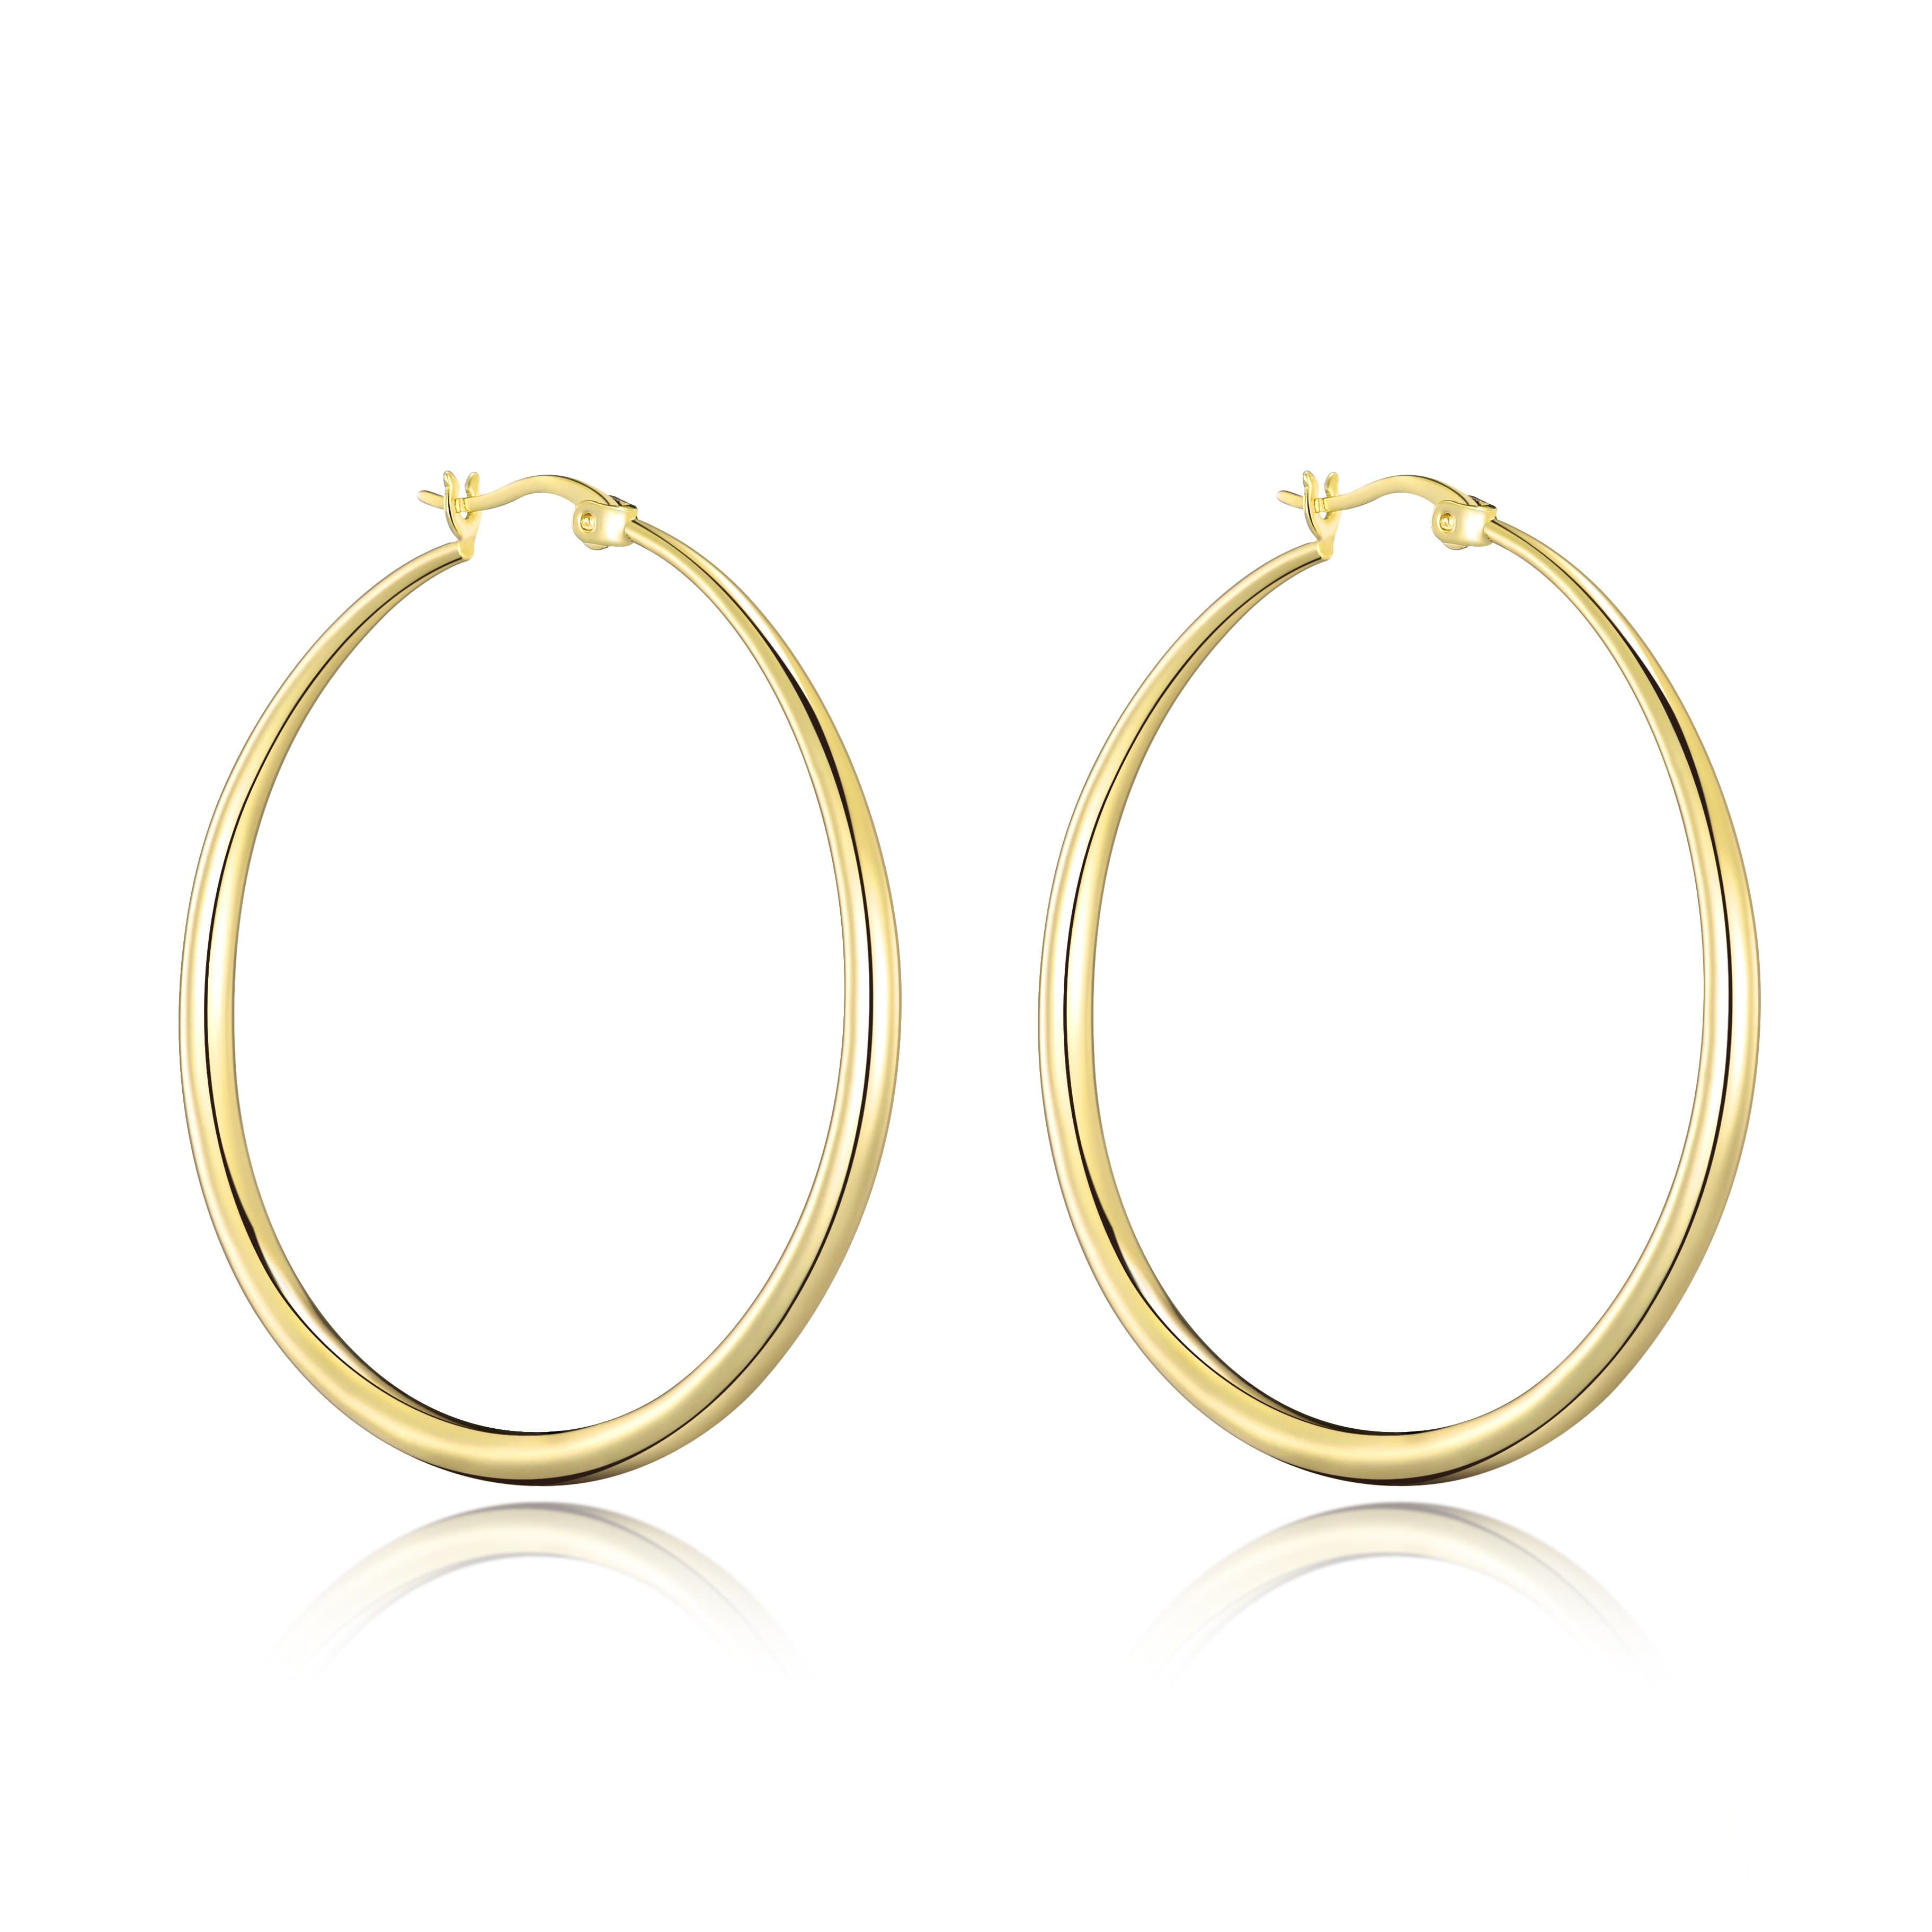 Gold Plated 50mm Hoop Earrings